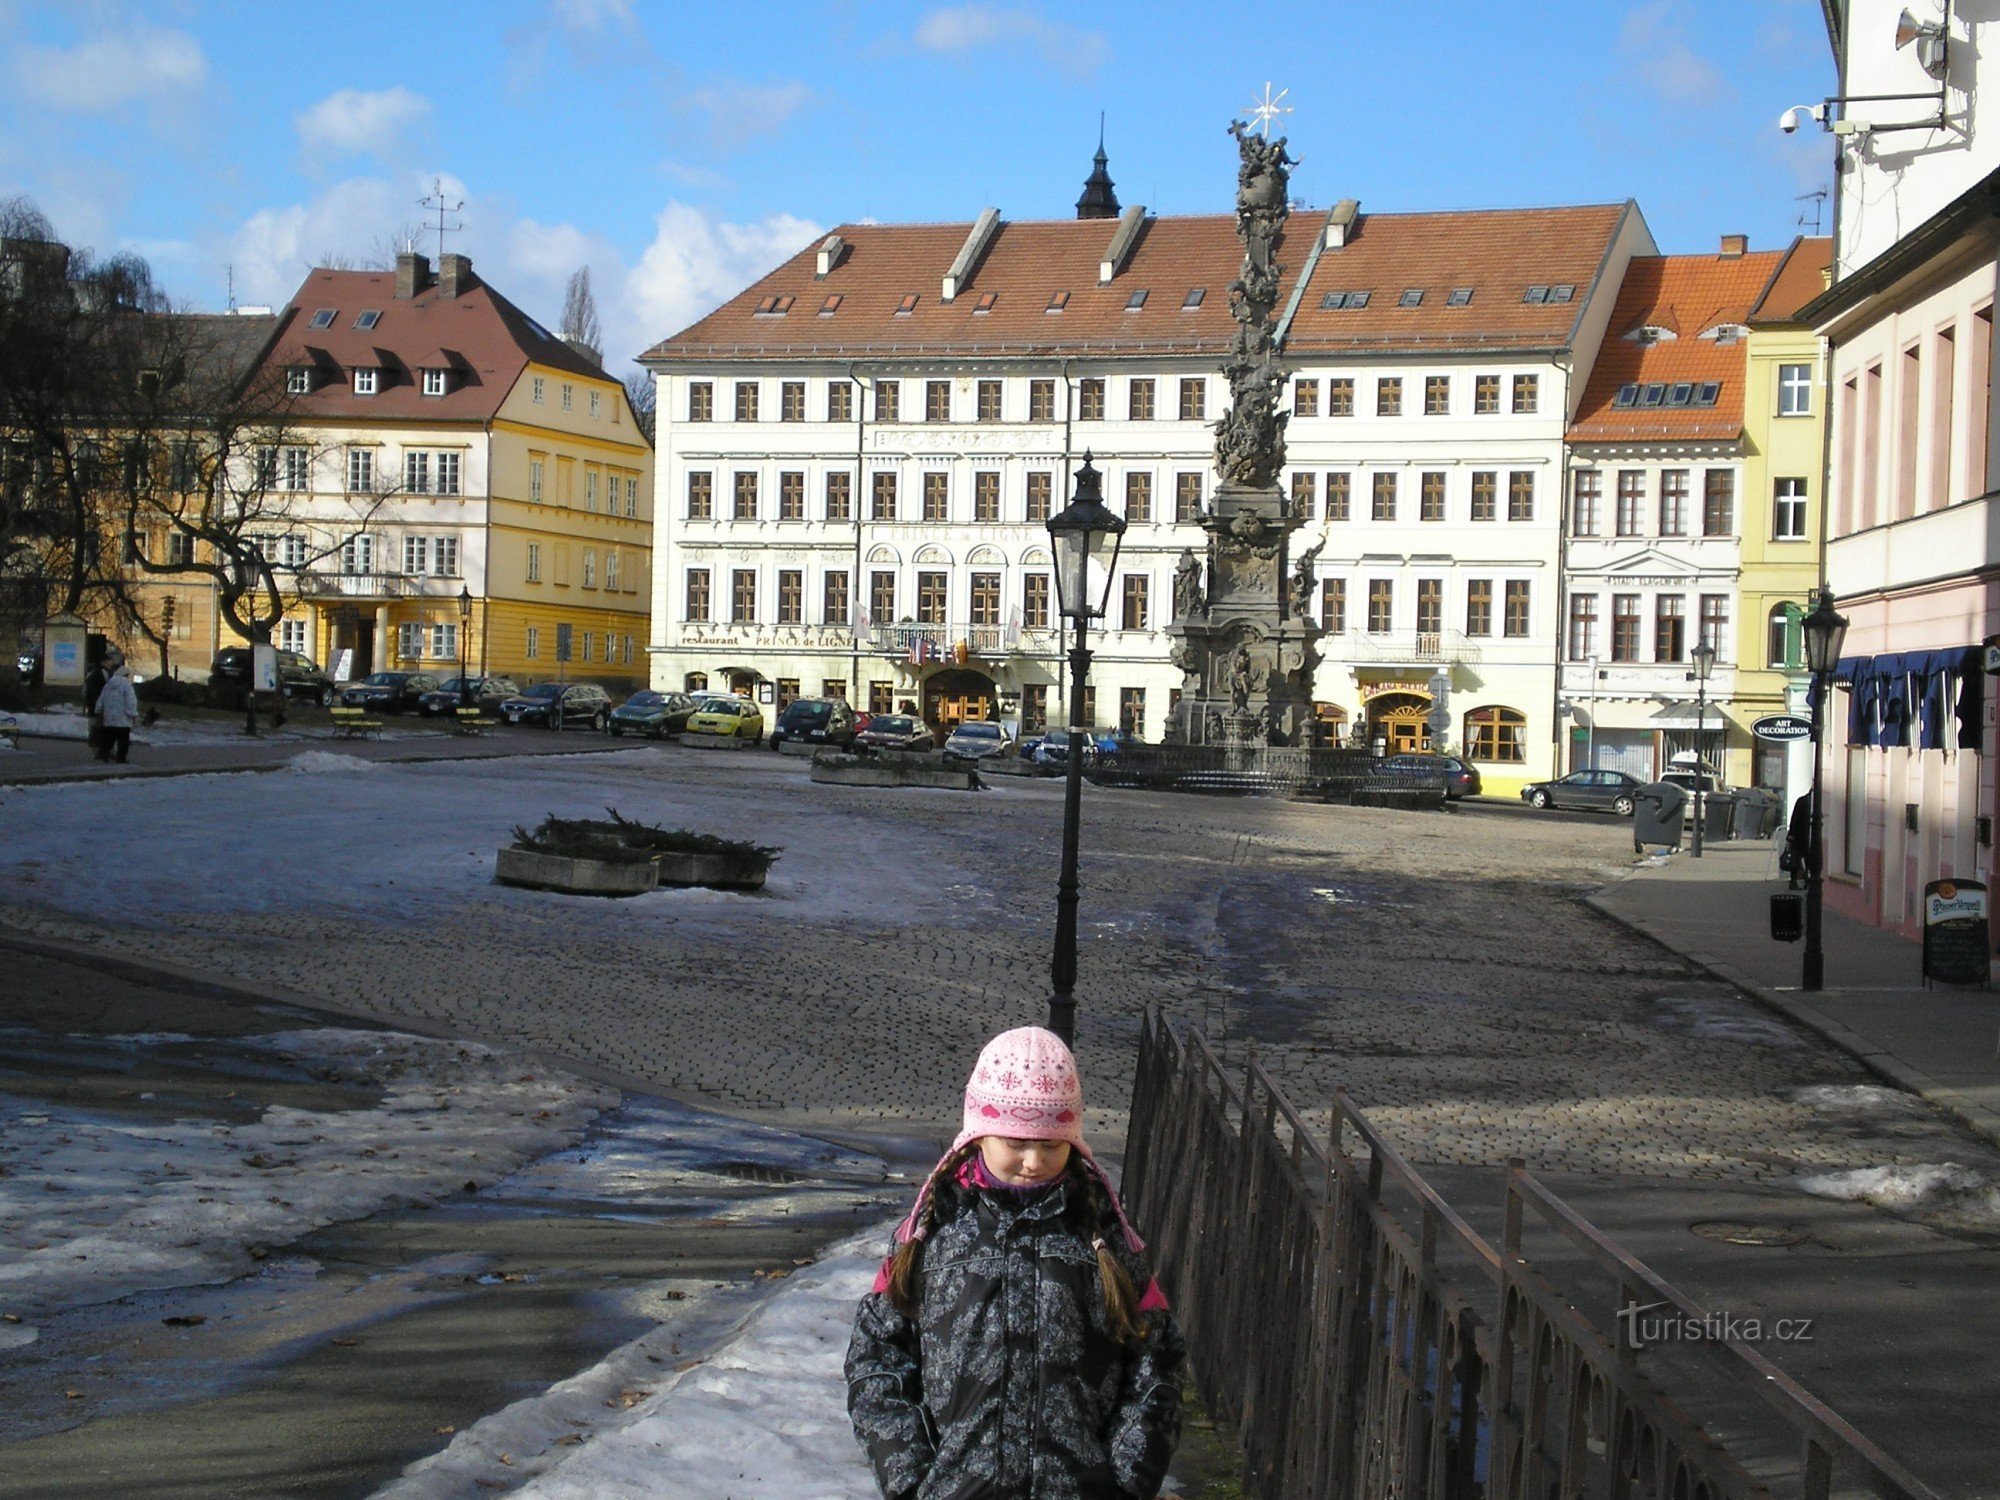 Στήλη πανώλης στην πλατεία μπροστά από το κάστρο